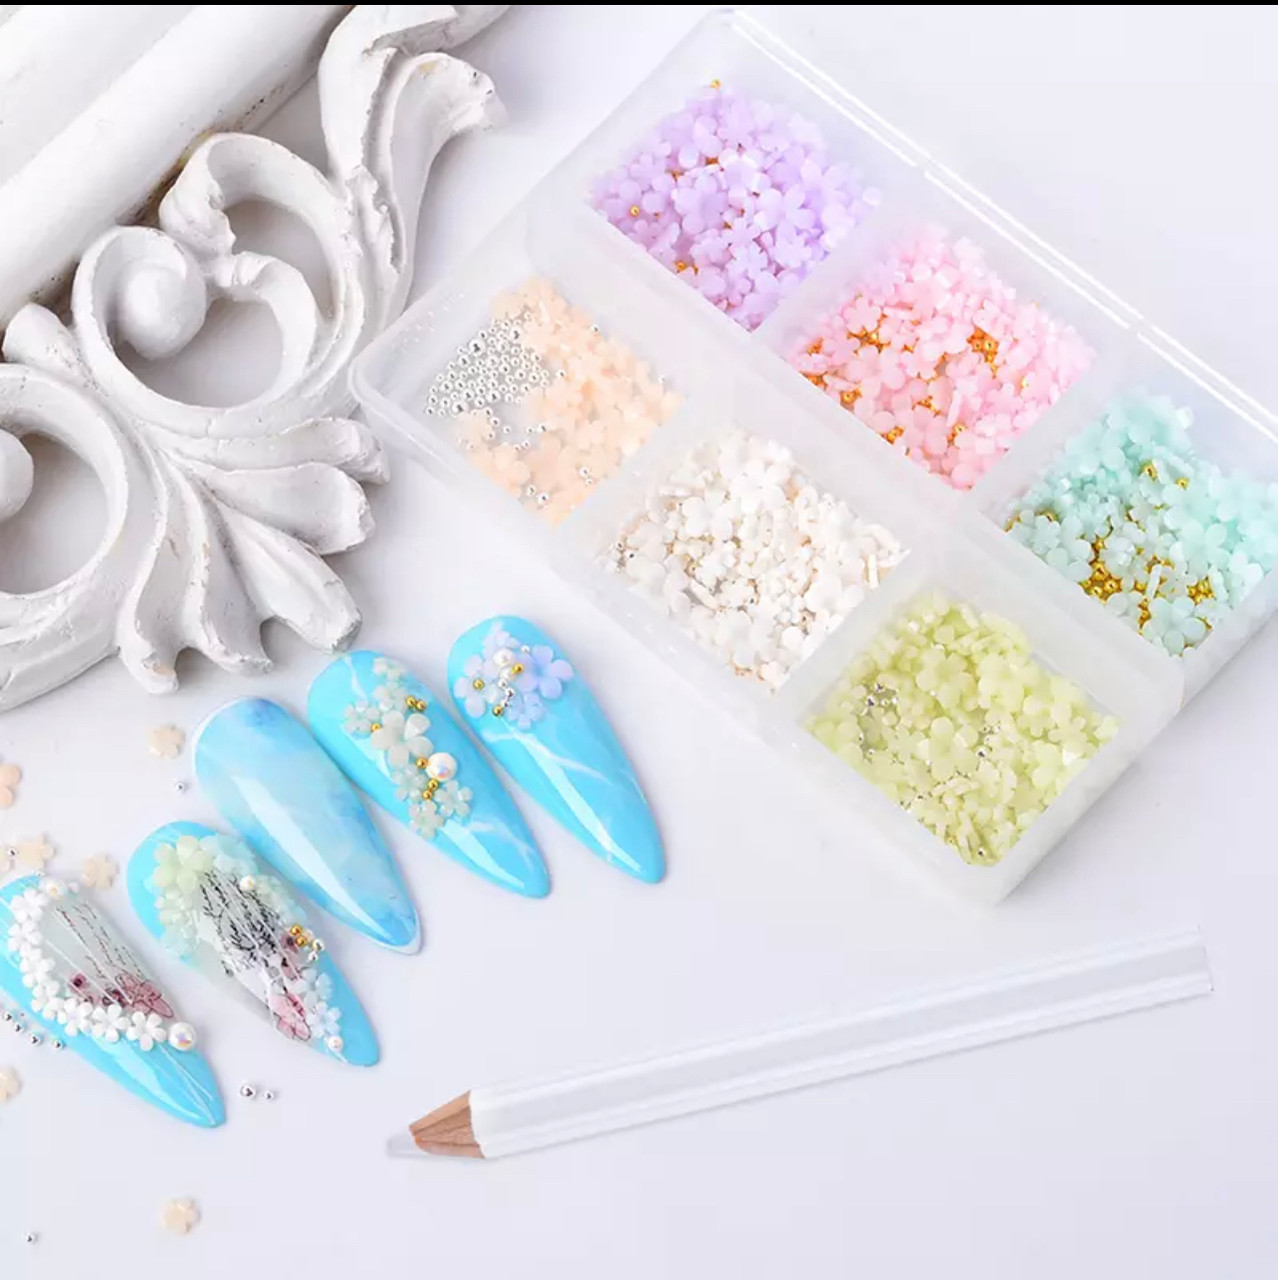 12 Cajas De Cristales surtidos para Decoración Para Uñas Nail Art